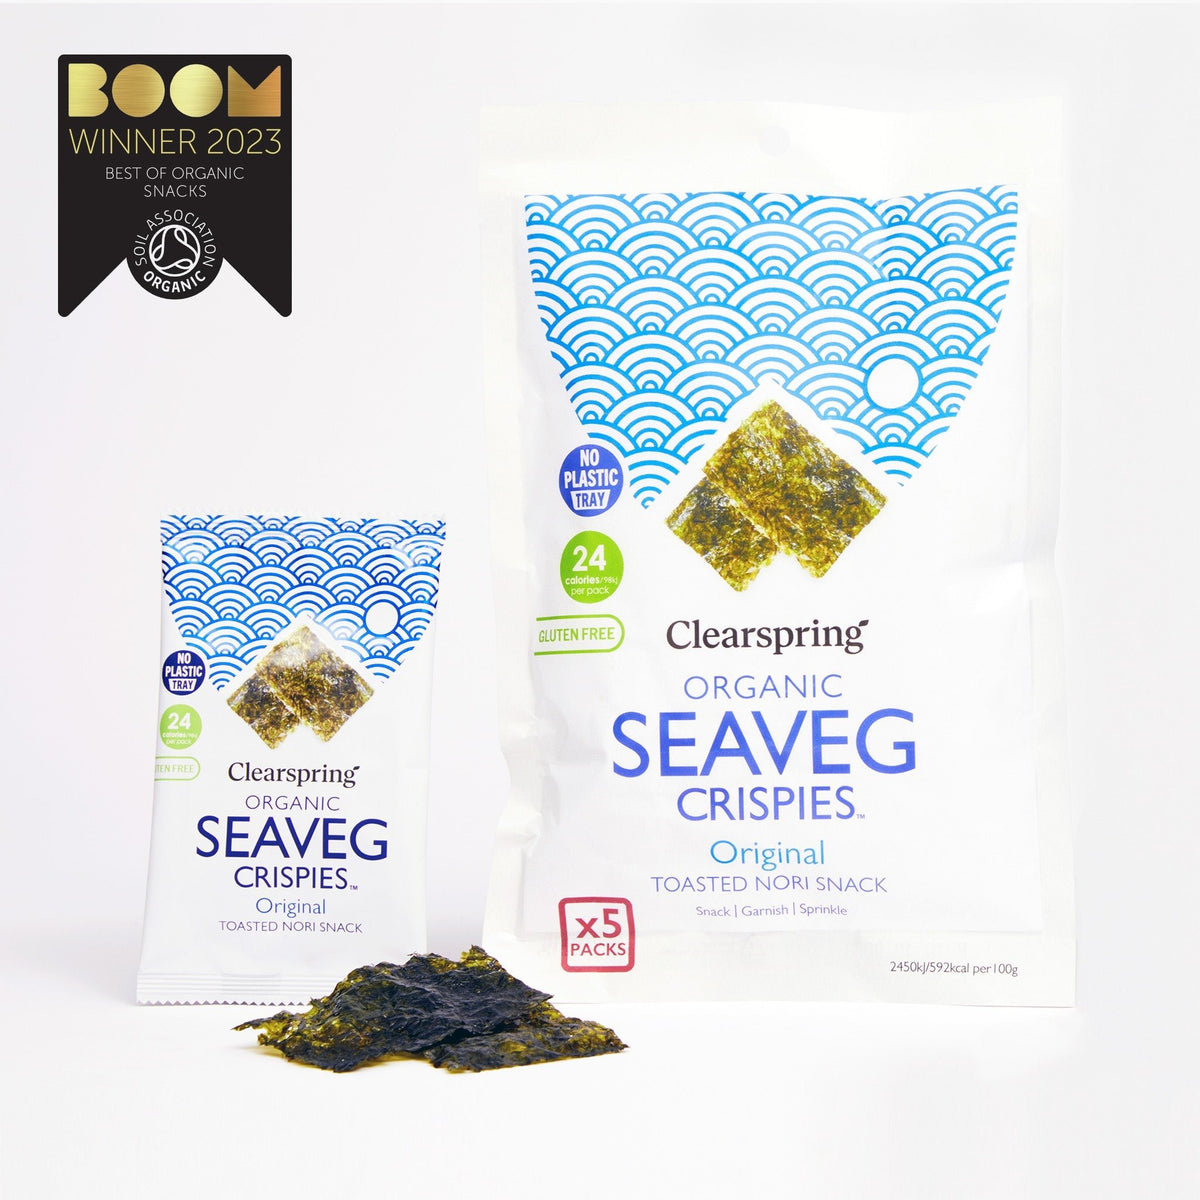 Clearspring Organic Seaveg Crispies Multipack - Original (Crispy Seaweed Thins)